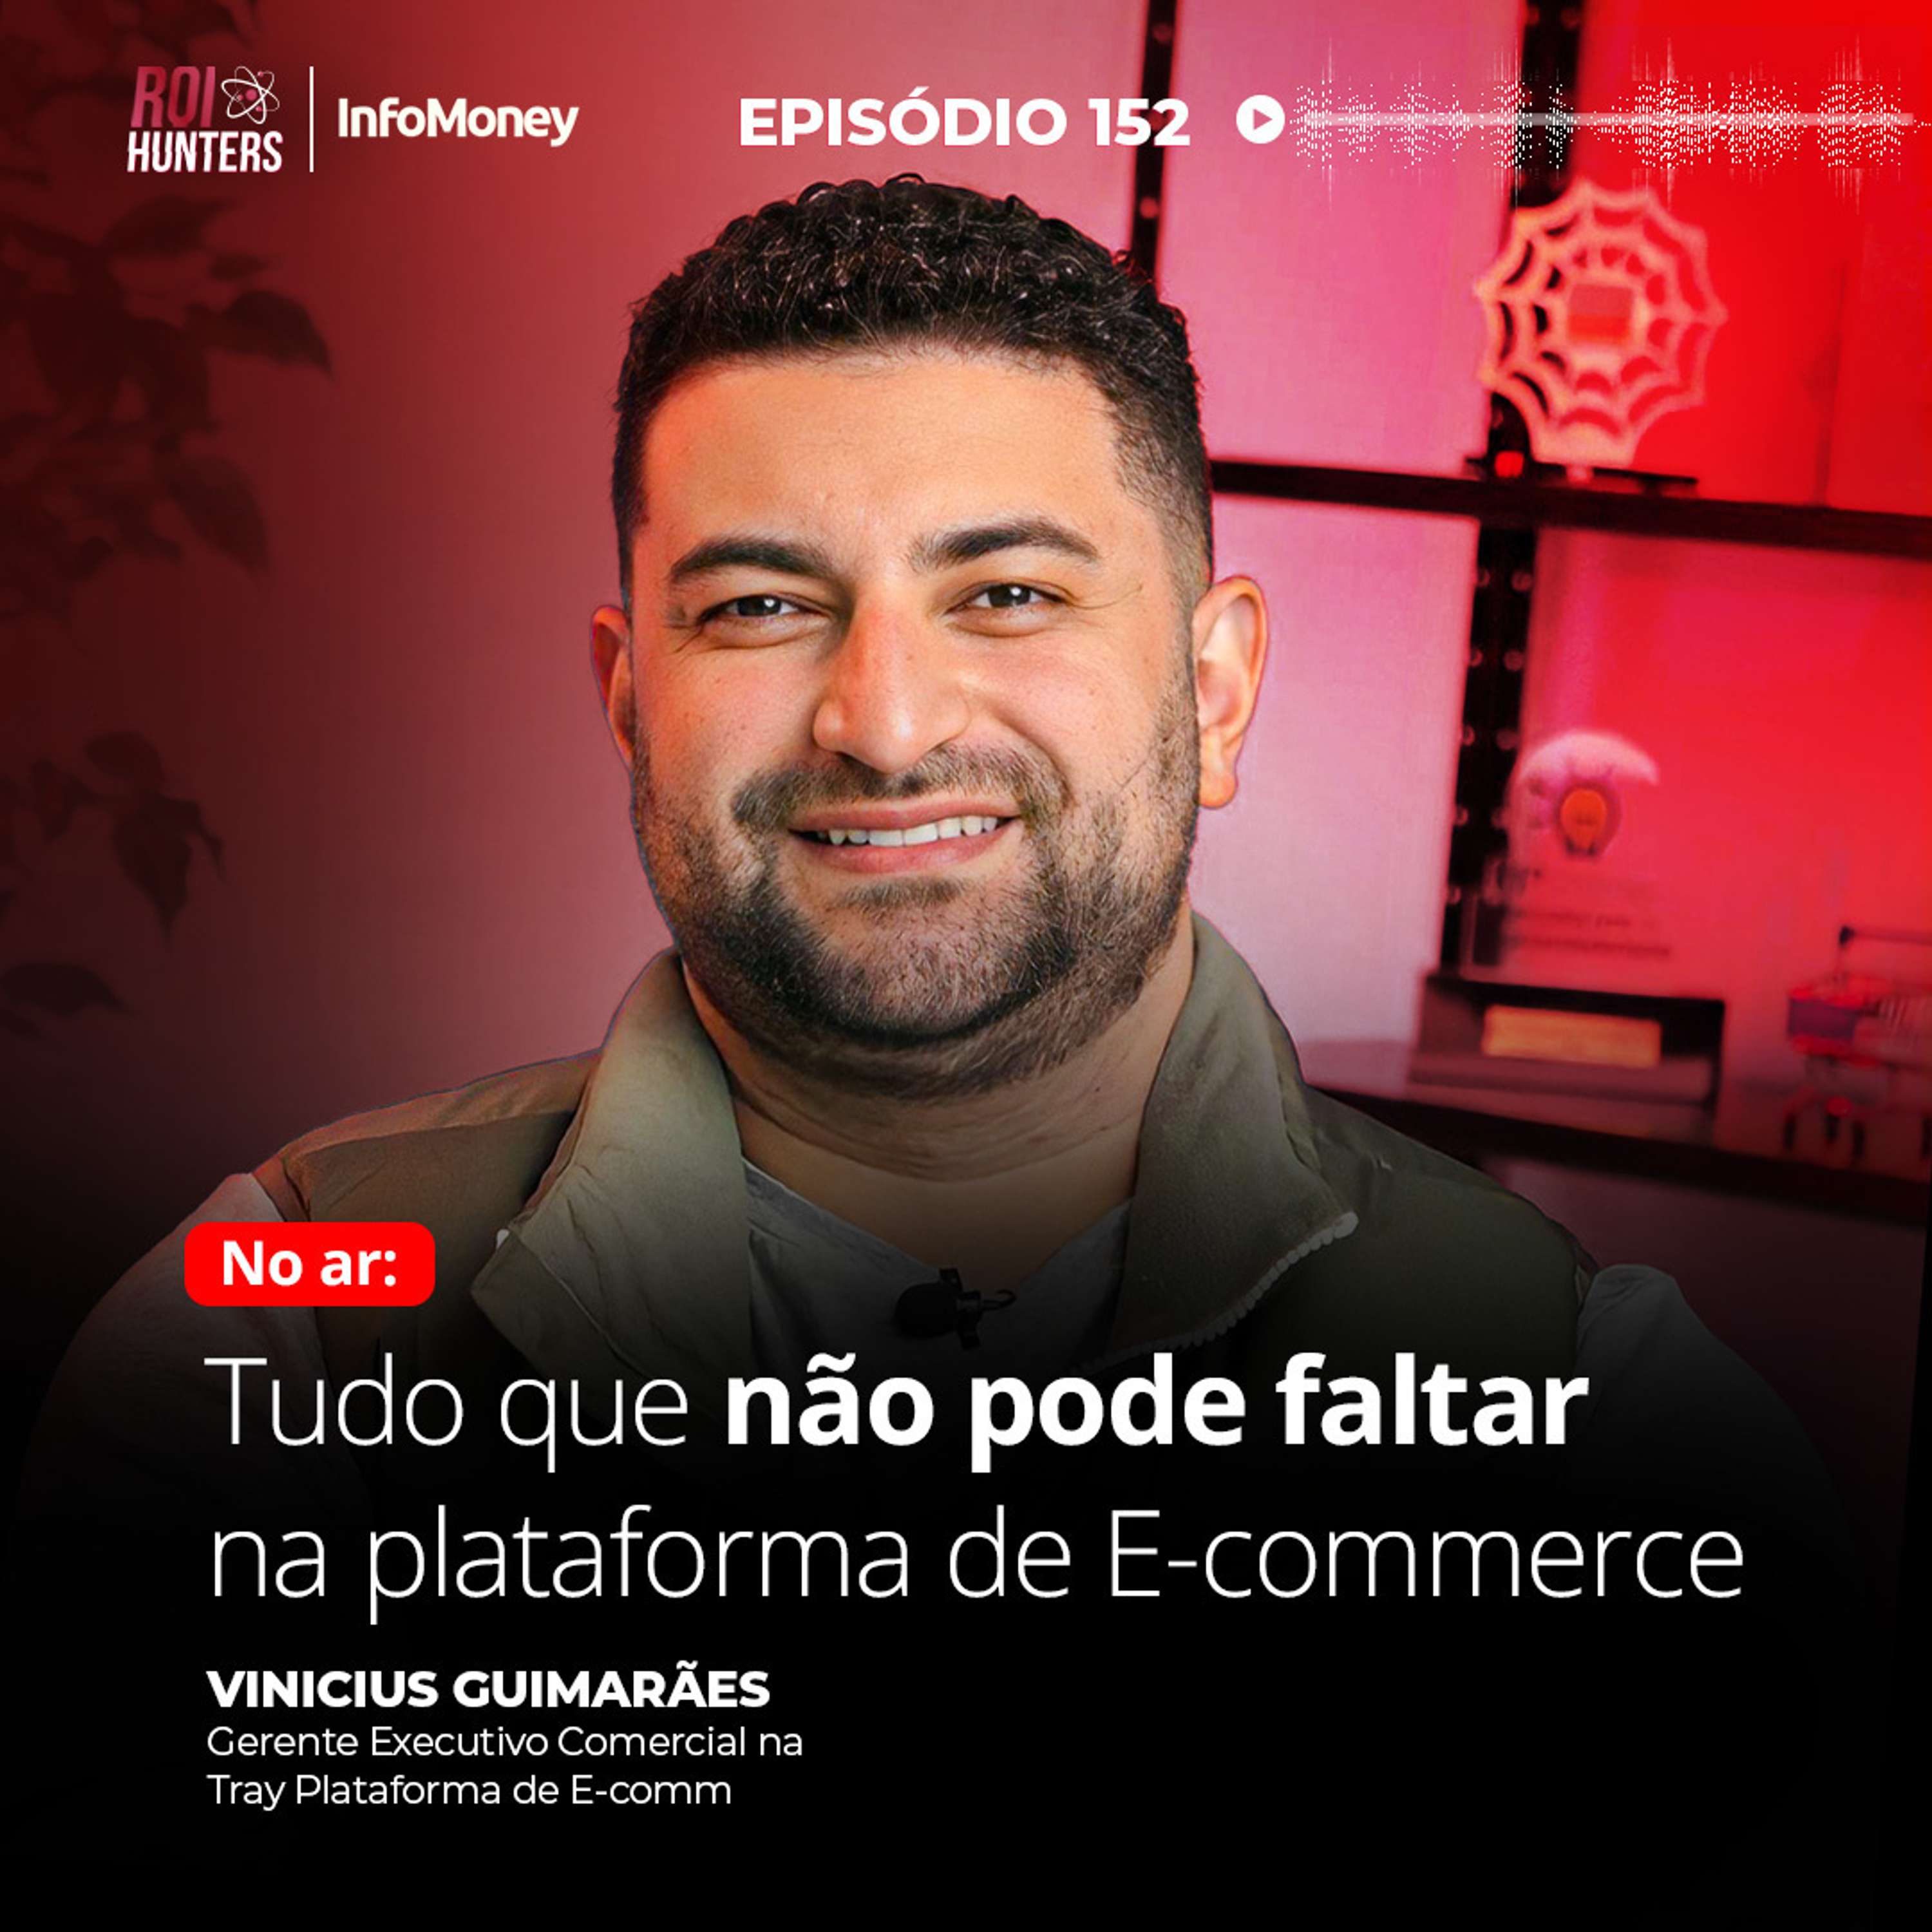 #152 - Tudo que não pode faltar no E-commerce com Vinicius Guimarães da Tray